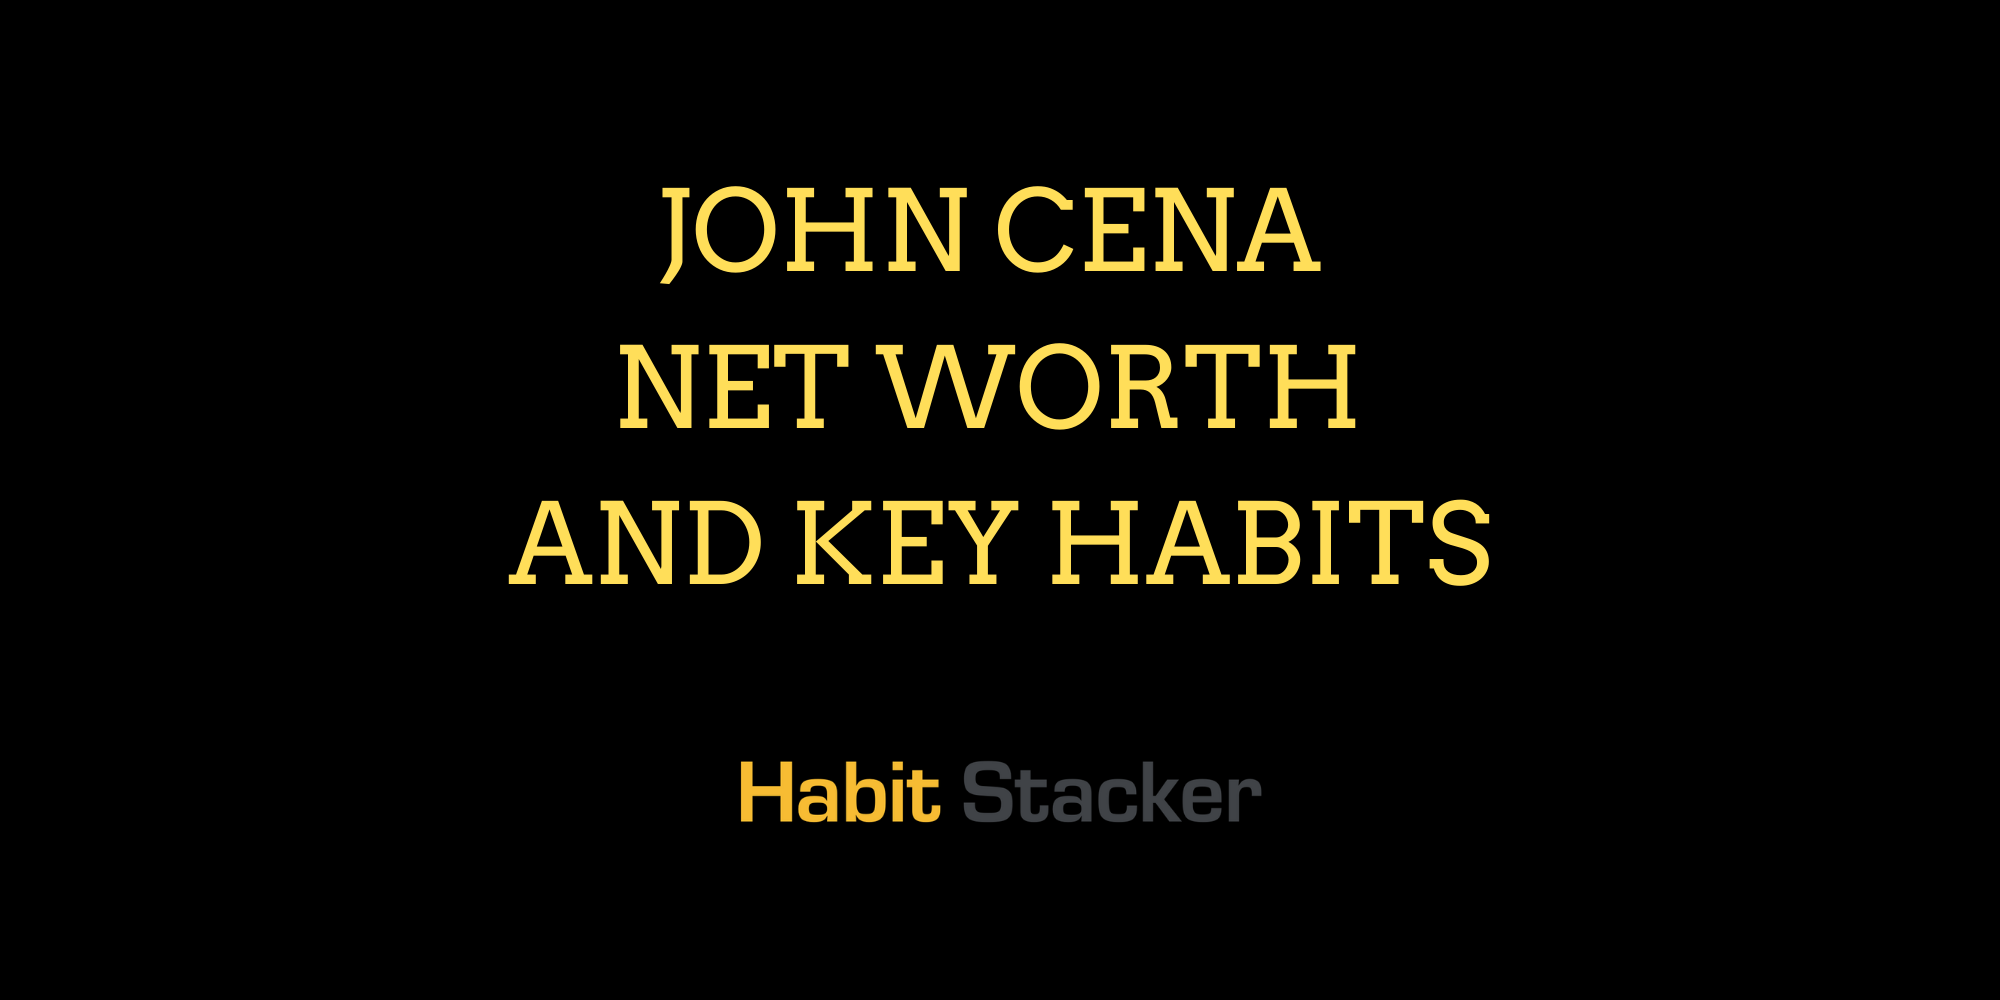 John Cena Net Worth And Key Habits